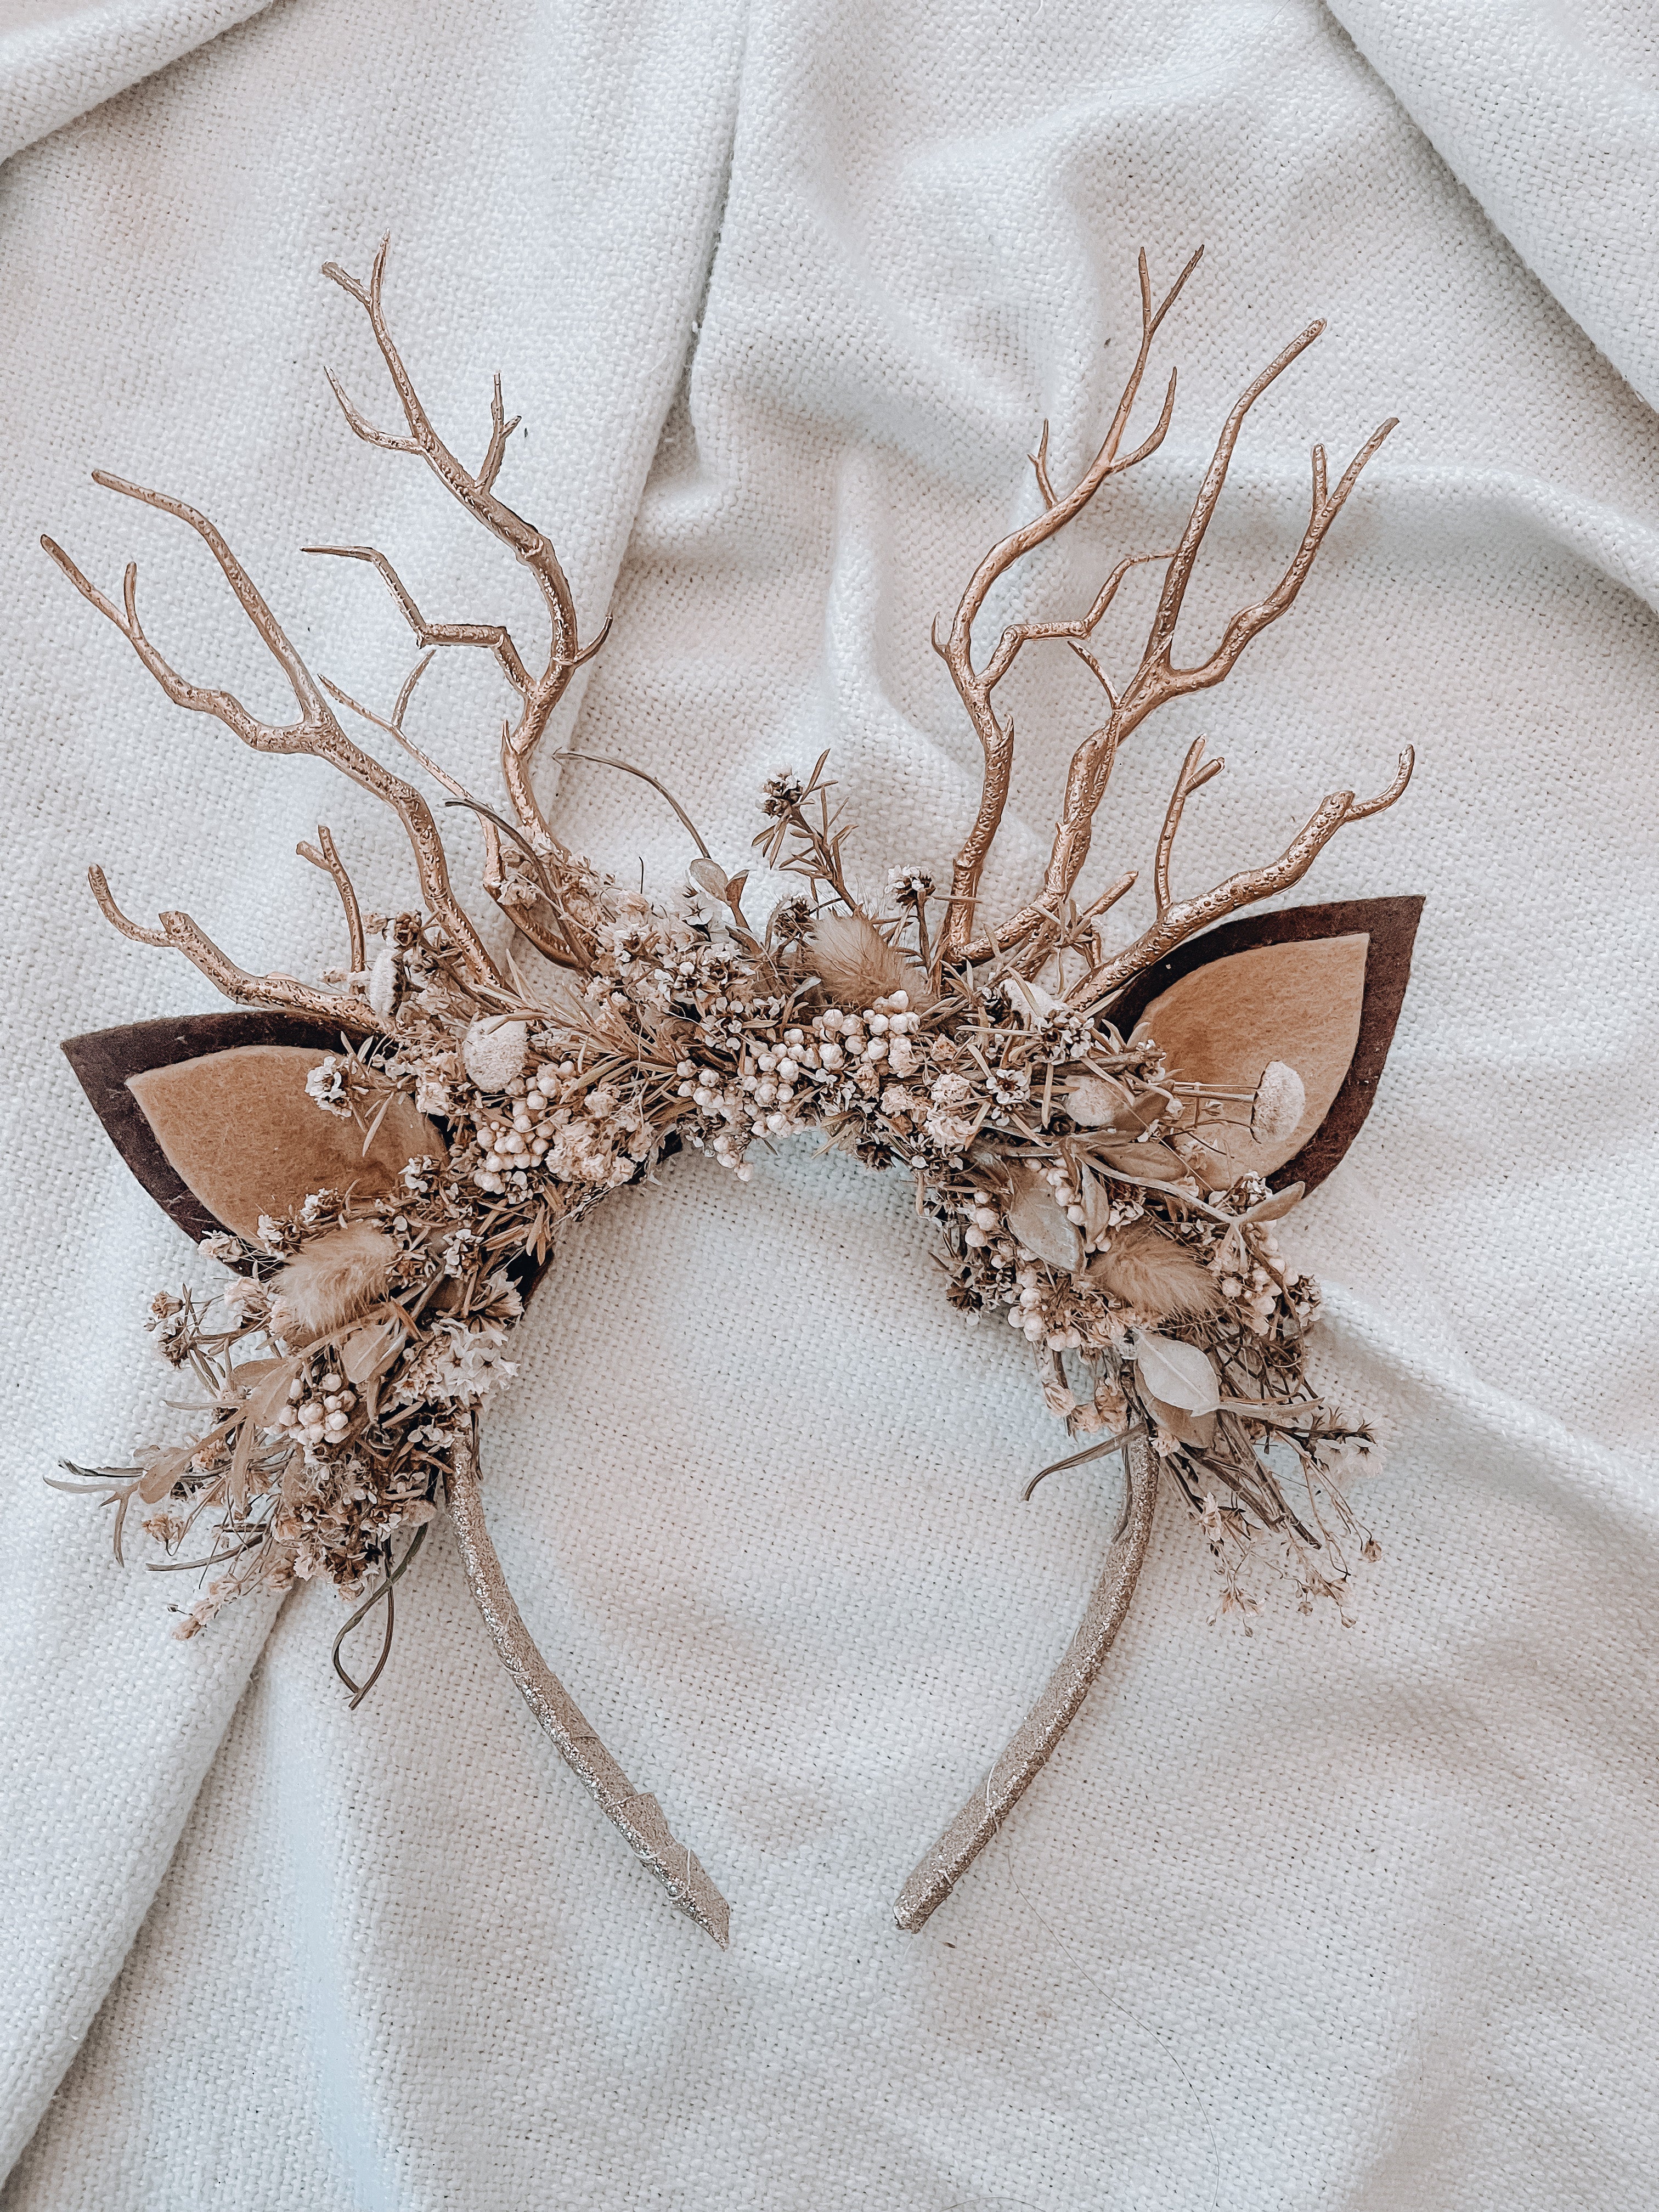 Everlasting Natural floral reindeer crown - Kids/Adult deer